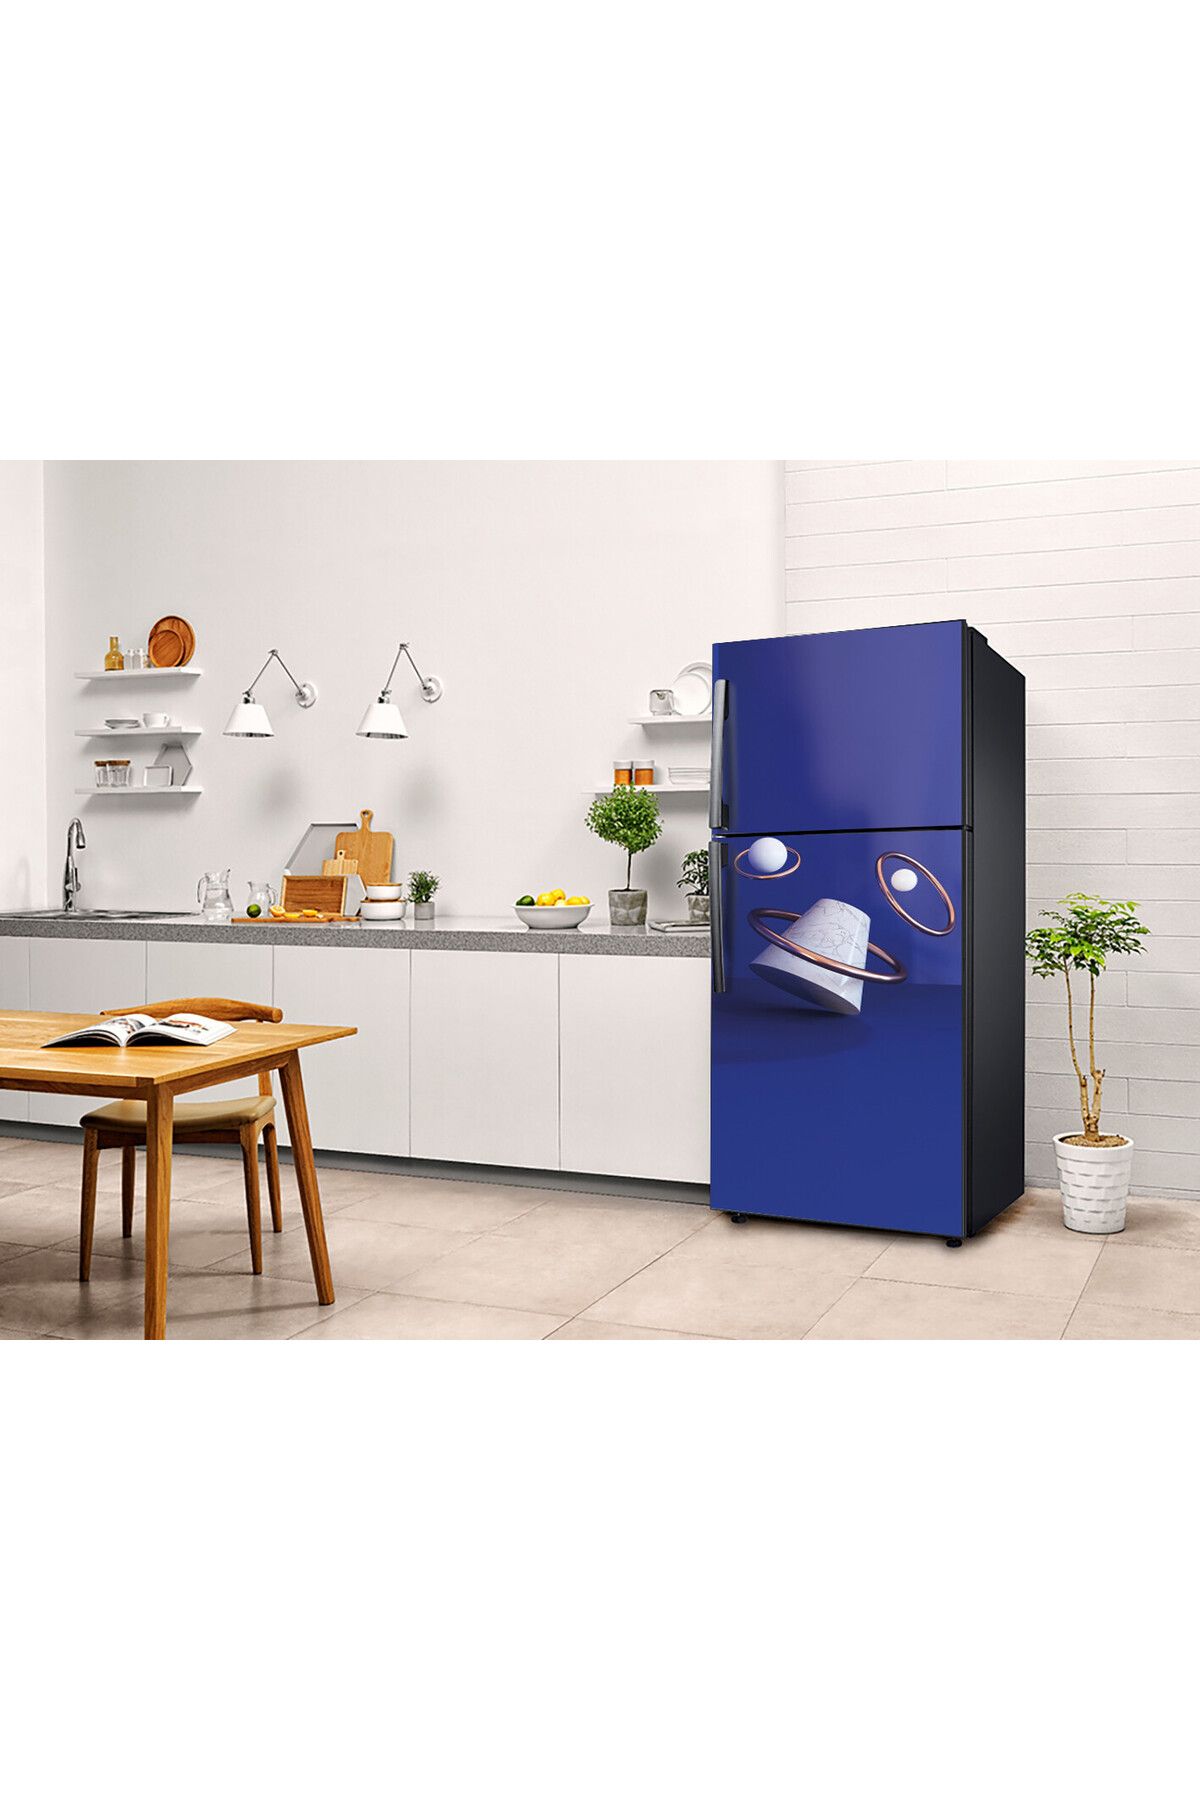 çizmeli Buzdolabı Kaplama Sticker & Beyaz Eşya Yapışkanlı Folyo Kaplama Sticker (75X200CM)